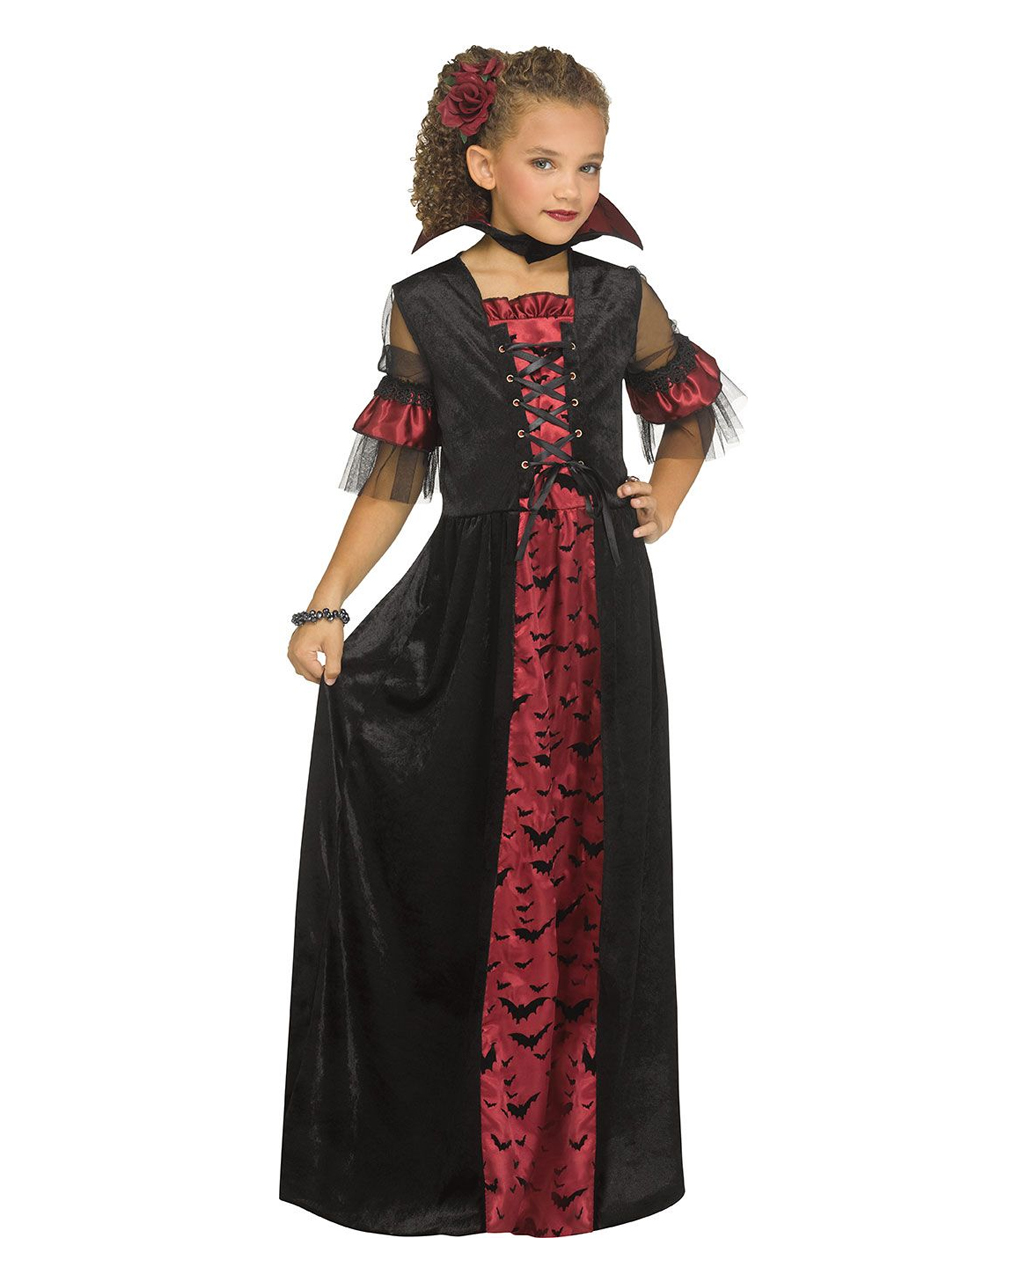 Viktorianisches Vampir Kostüm für Kinder, Vampirin Kostüm